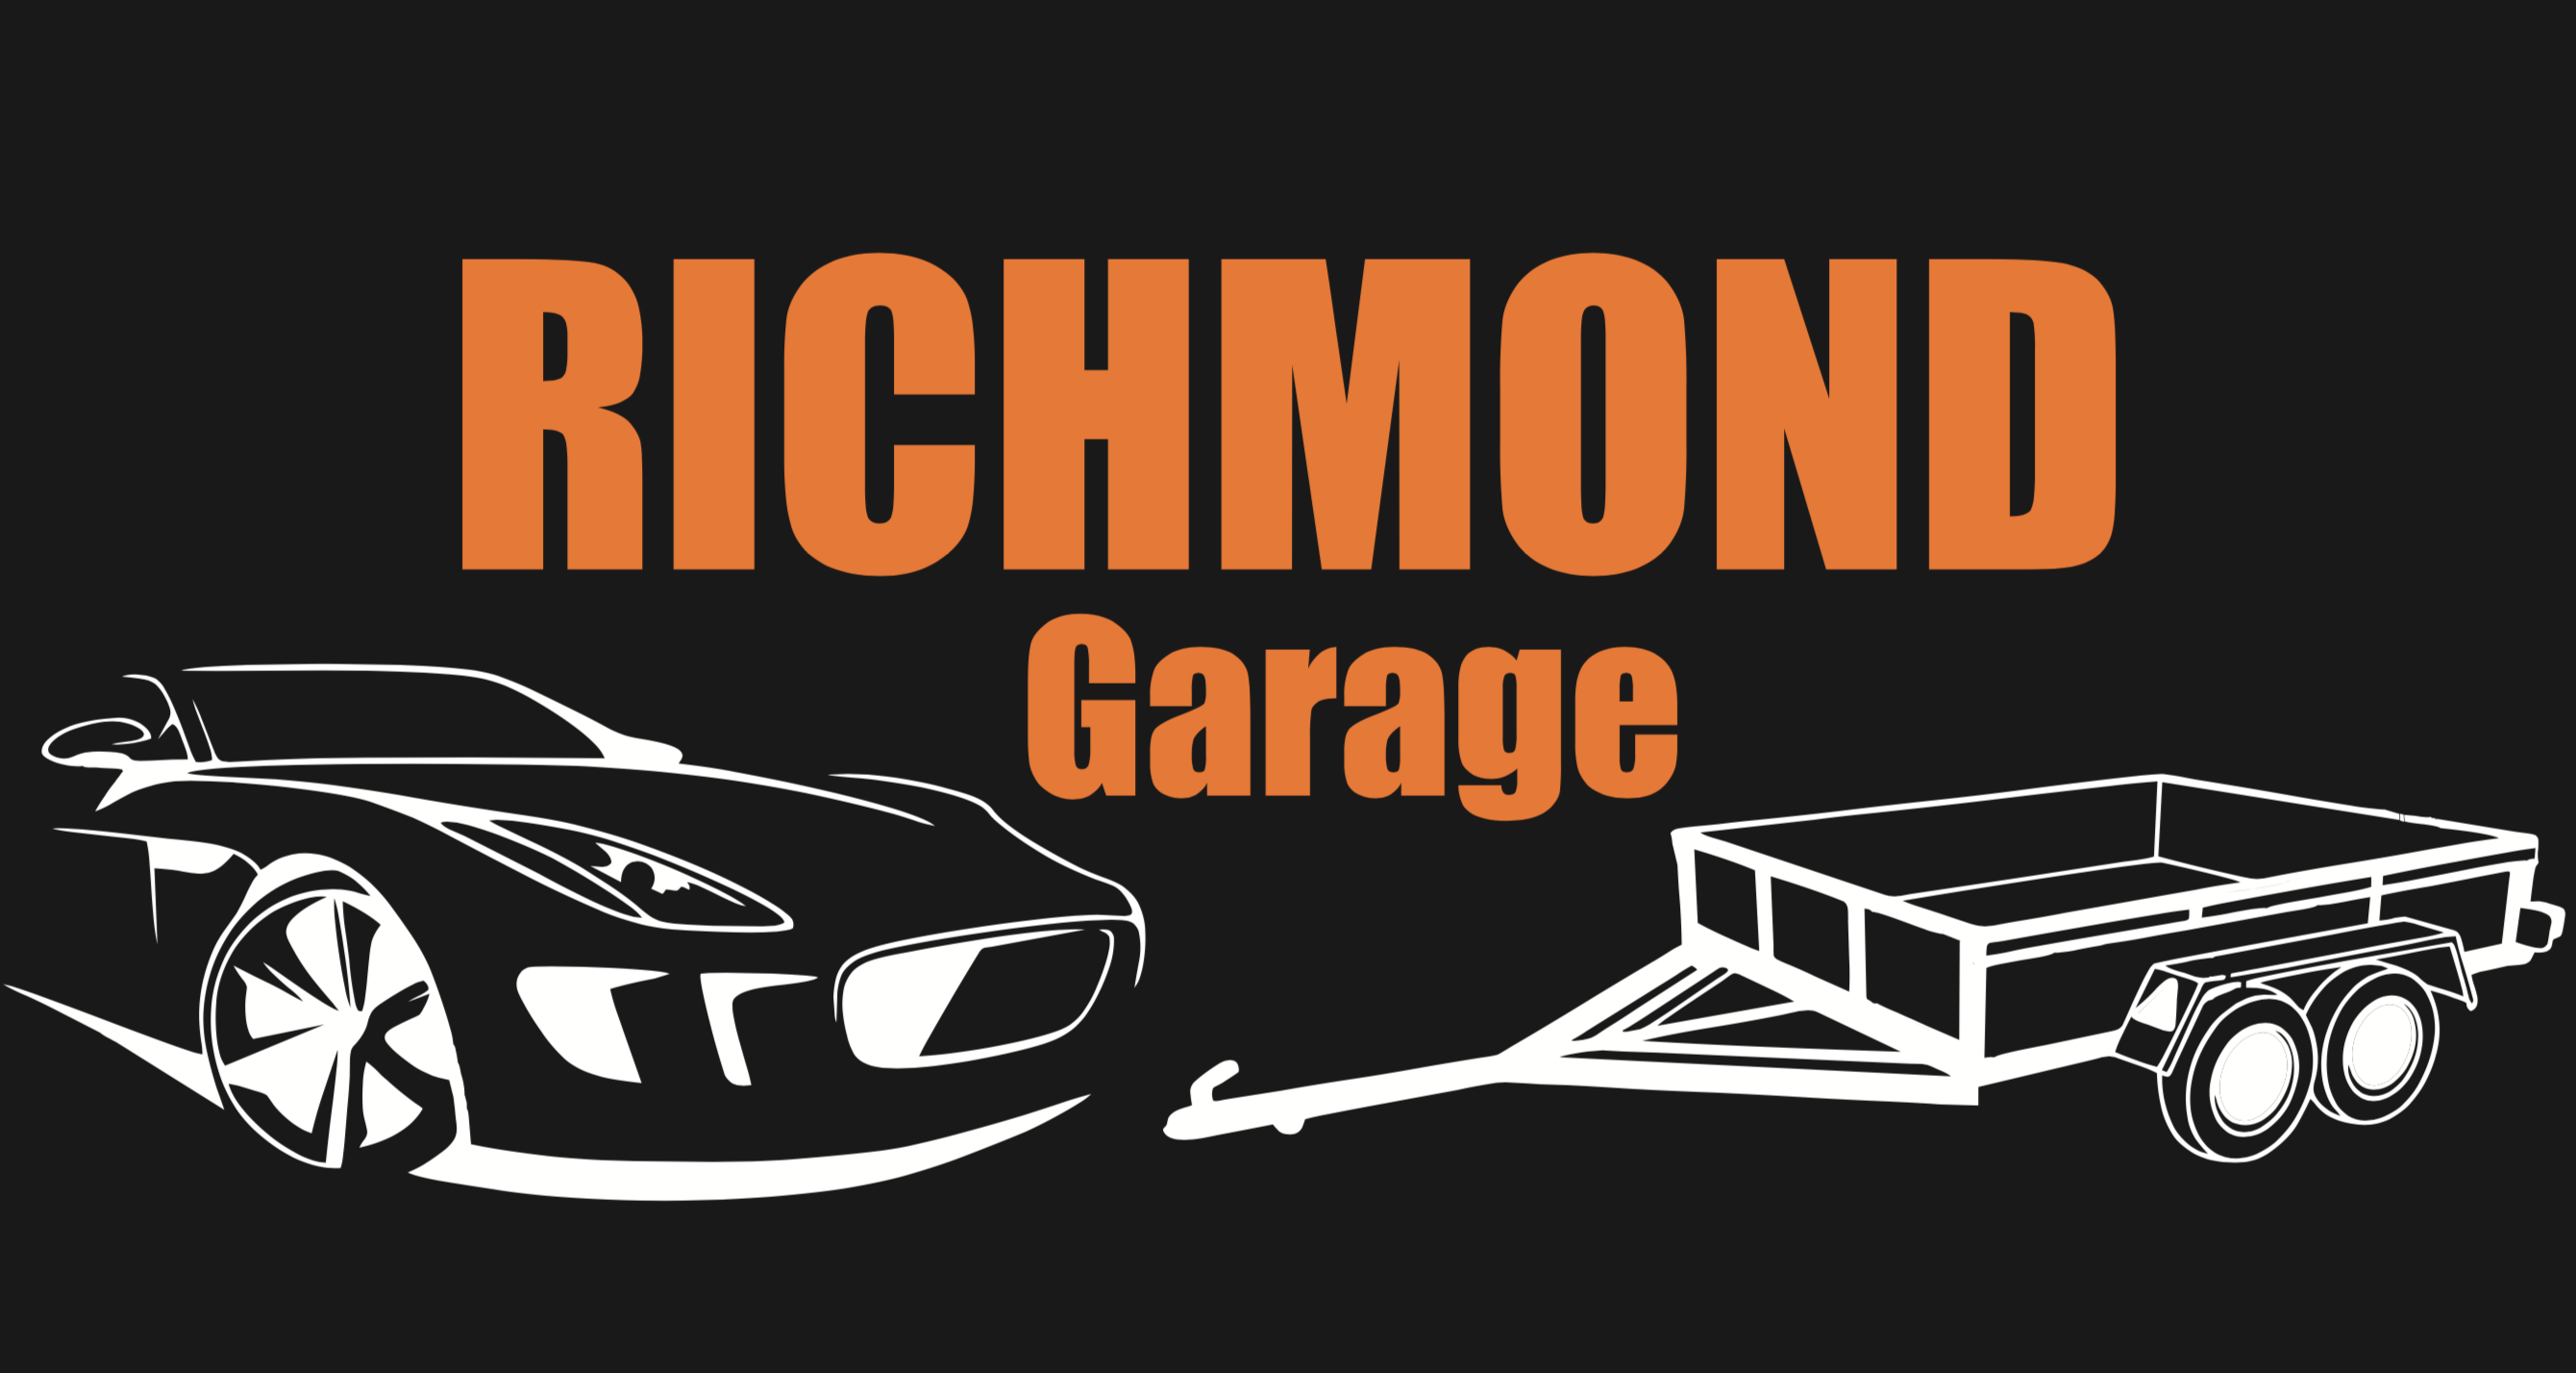 Richmond garage